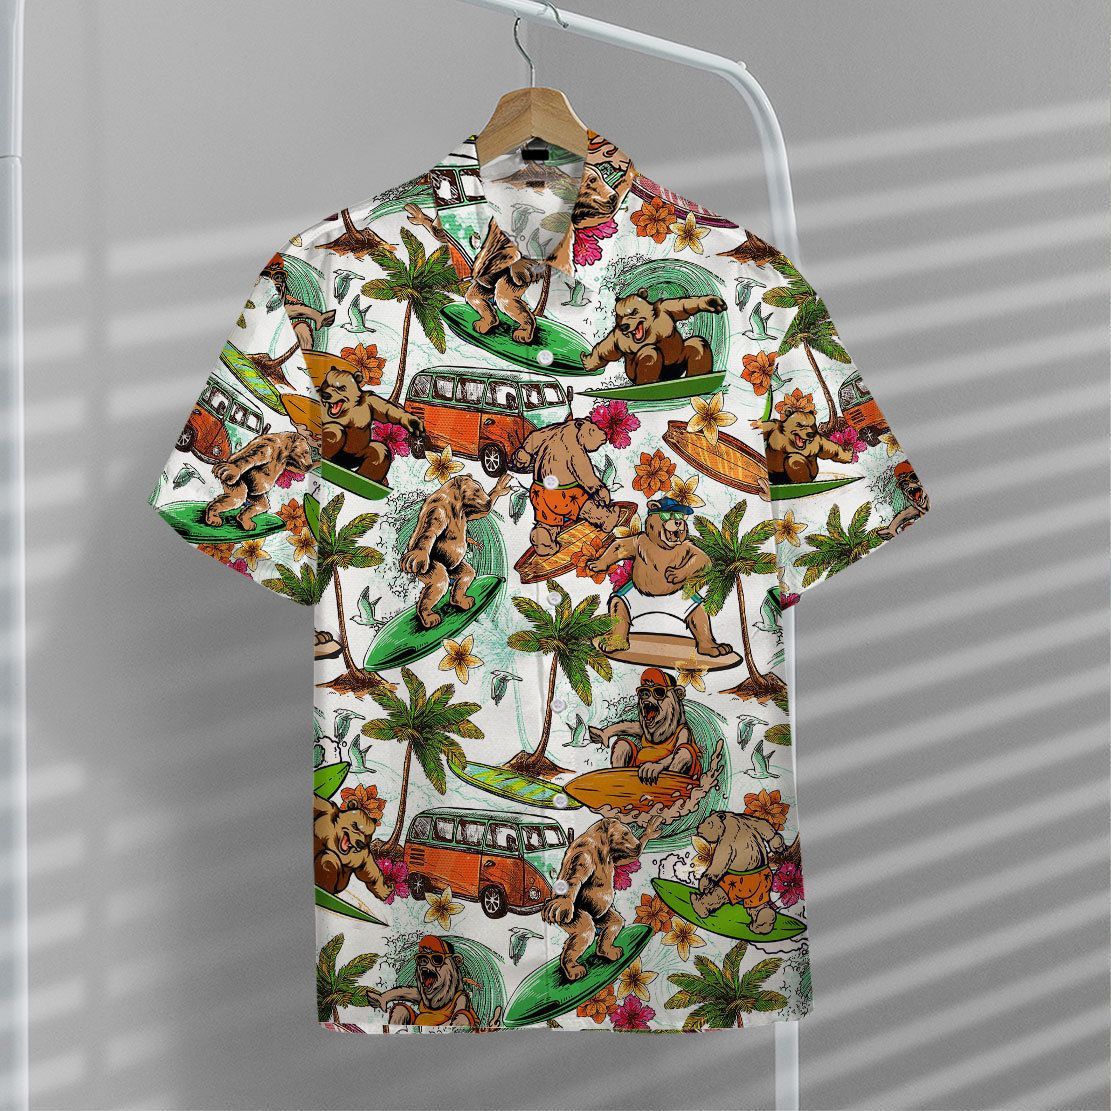 Gearhuman 3D Bear Surfing Hawaii Shirt ZZ0707212 Short Sleeve Shirt 